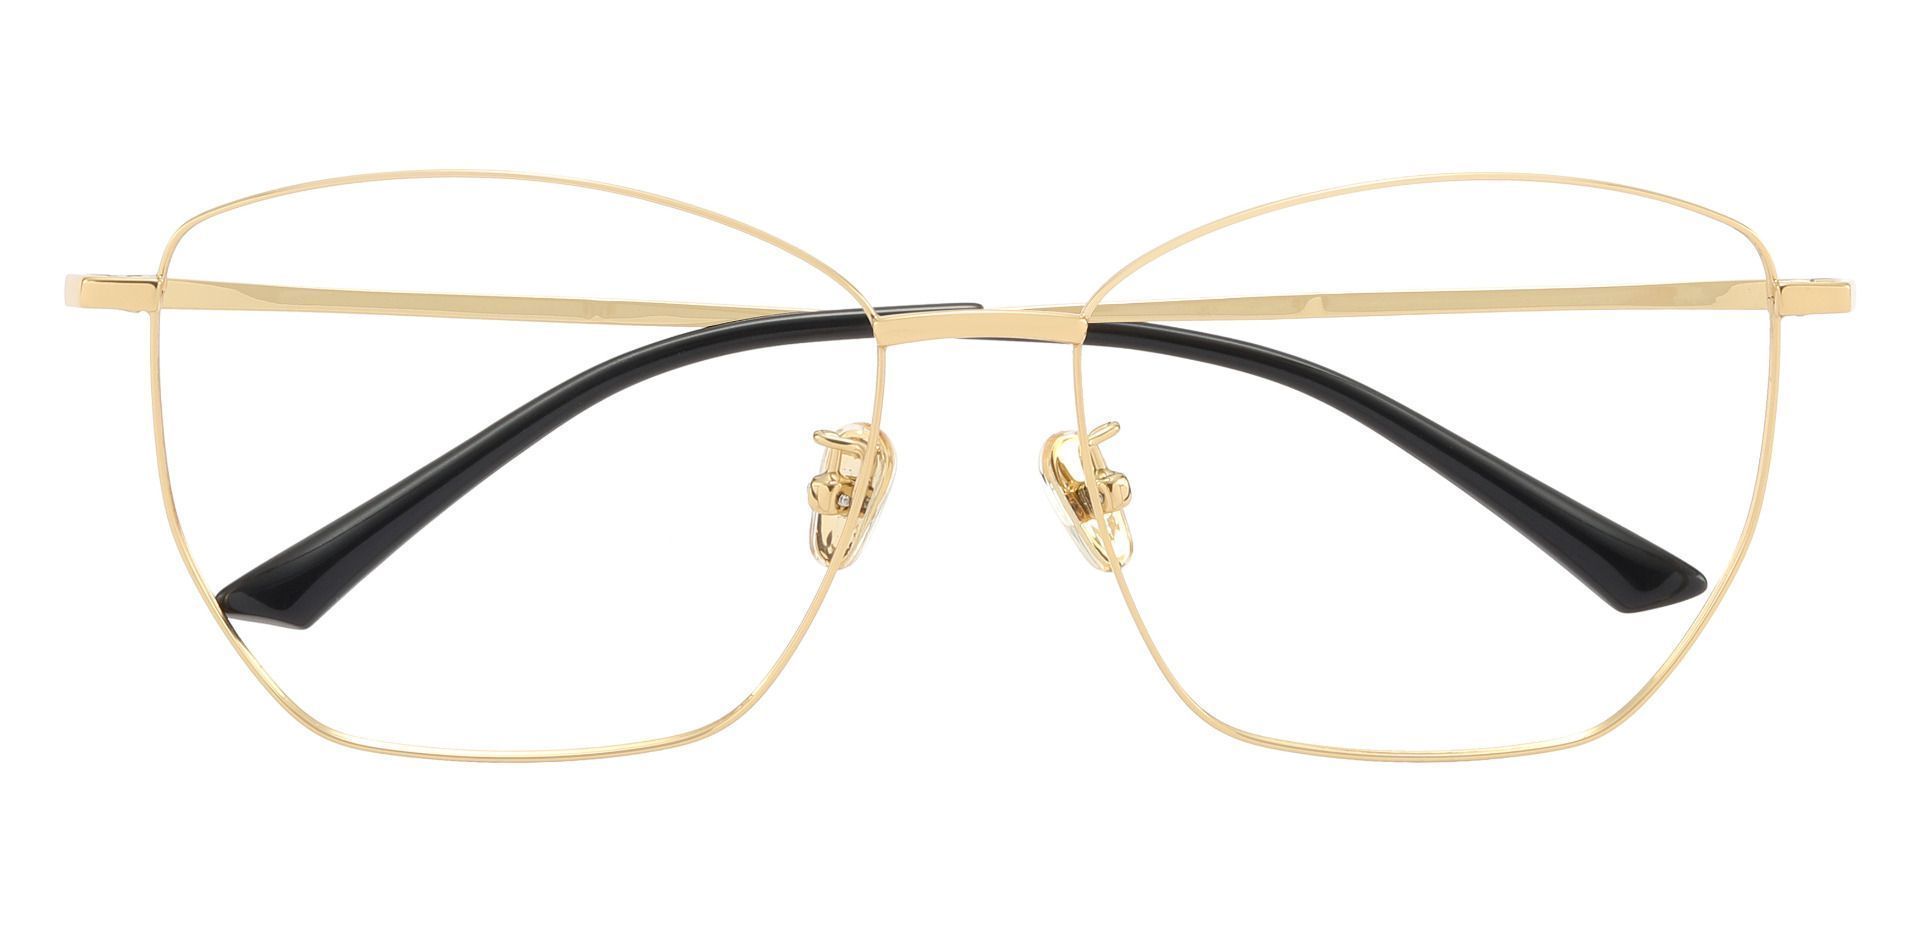 Boswell Geometric Eyeglasses Frame - Gold